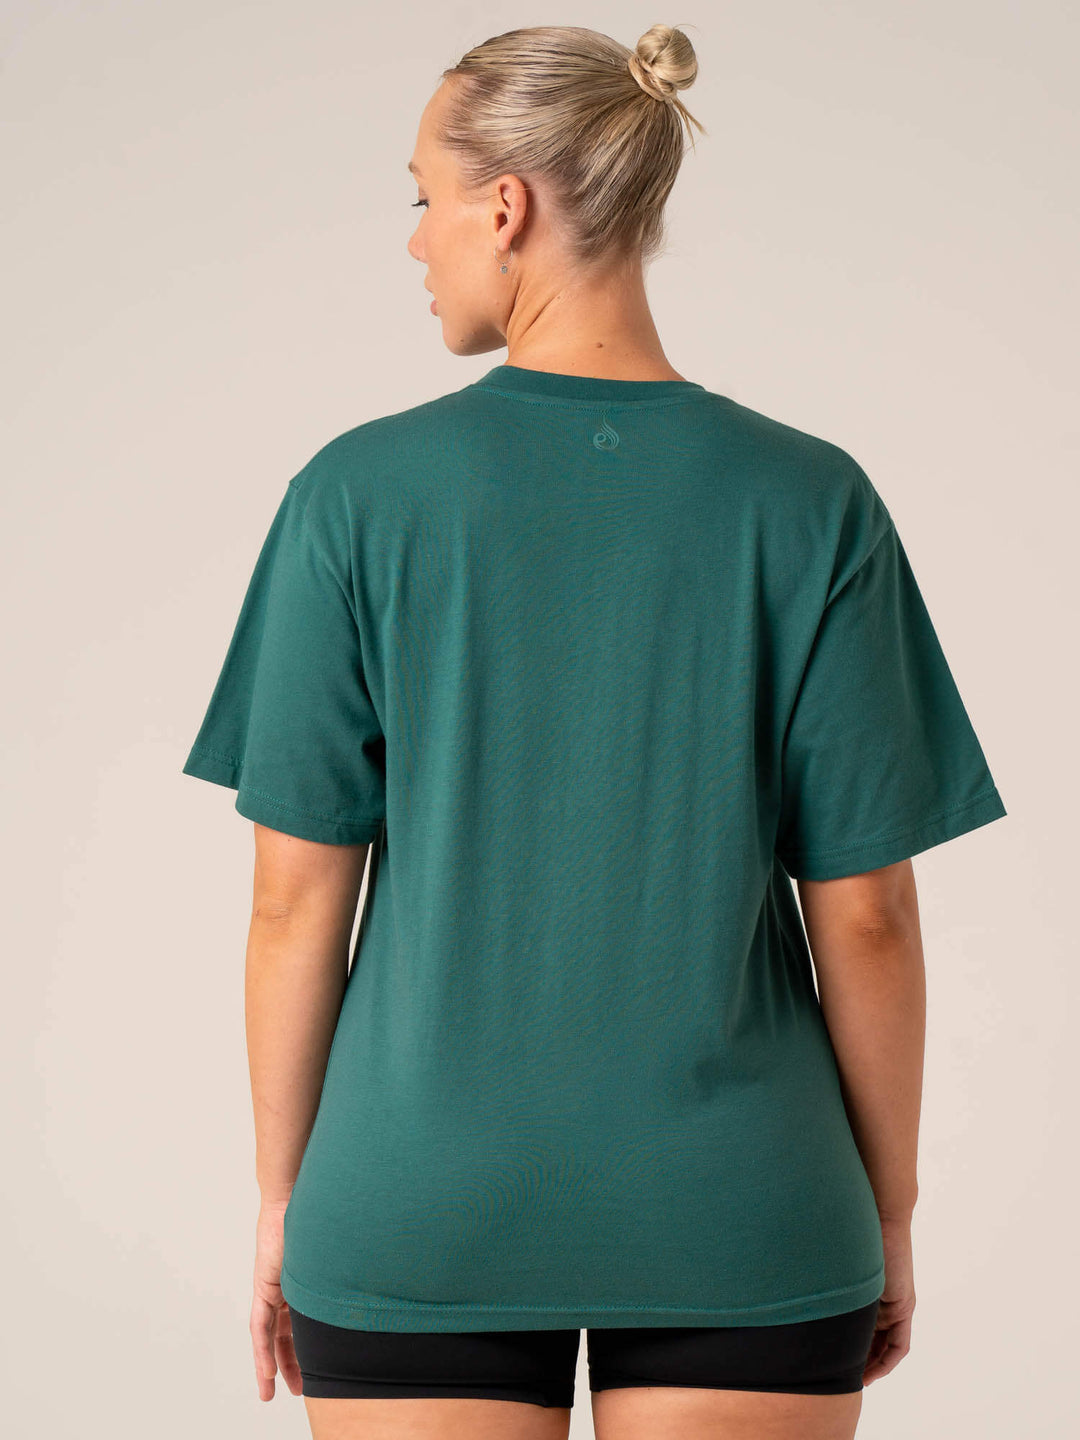 Soft Tech Oversized T-Shirt - Fern Green Marl - Ryderwear